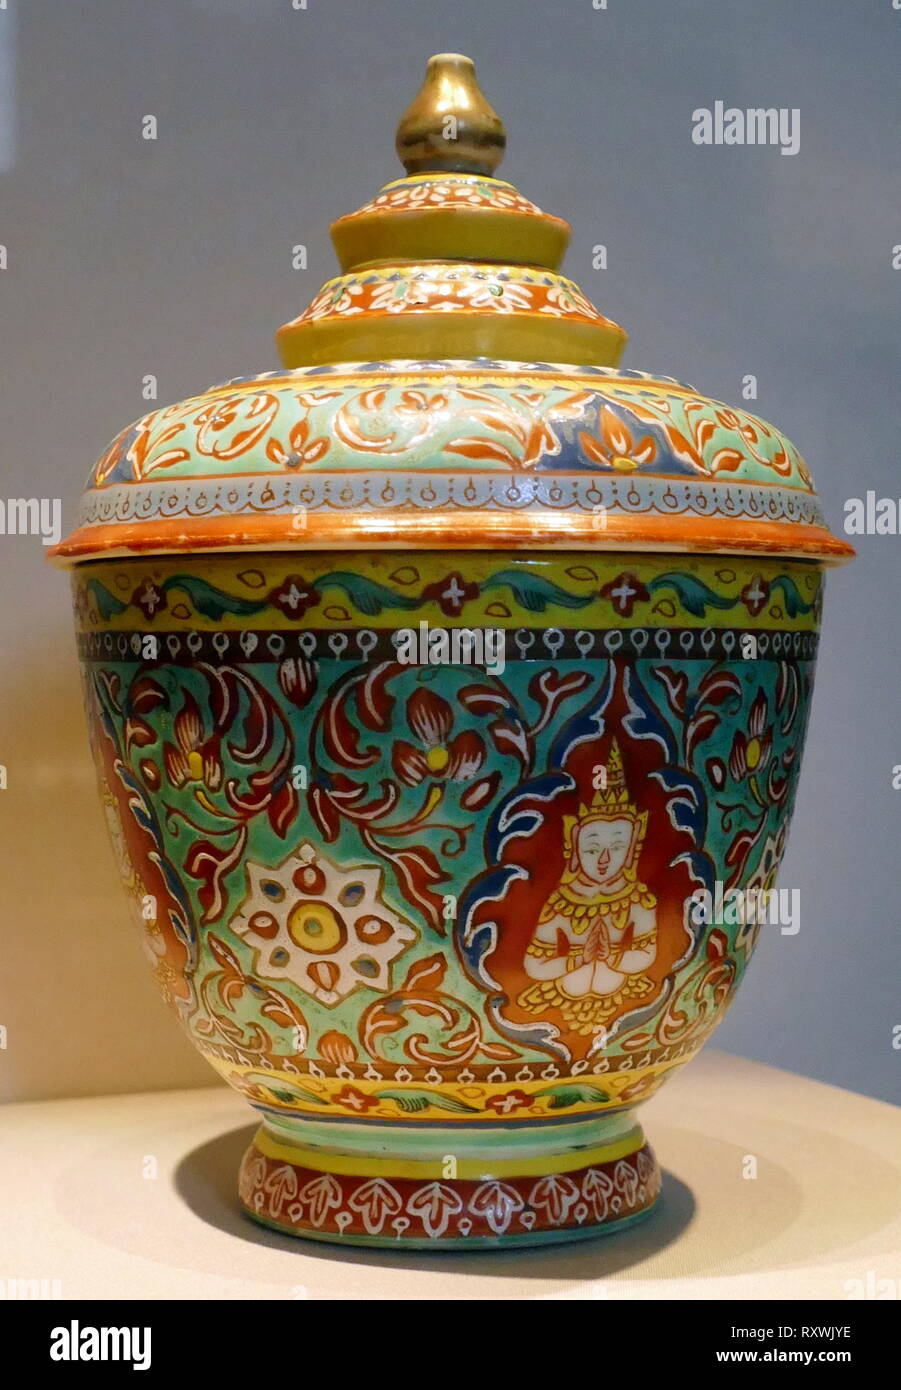 Bol et couvrir la Chine, 1750-1800, chinois, fait pour le marché de la Thai royal, ce décor émaillé est appelée Bencharong (cinq en couleur). Banque D'Images